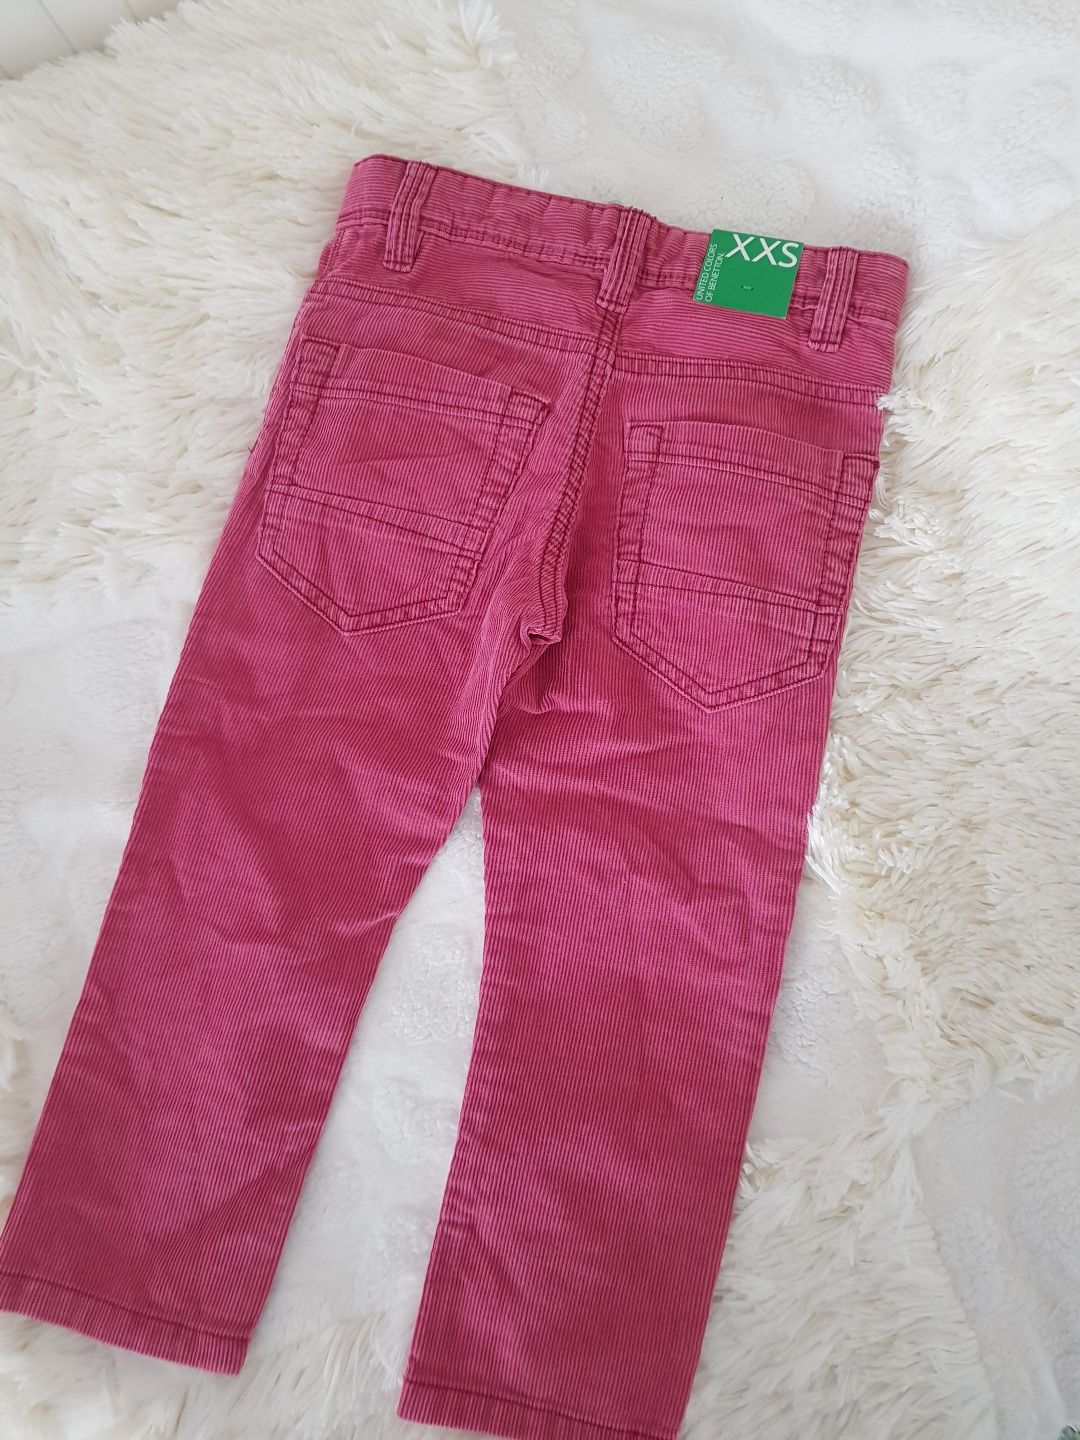 Pantaloni raiati fetita Benetton 3-4 ani, noi cu eticheta